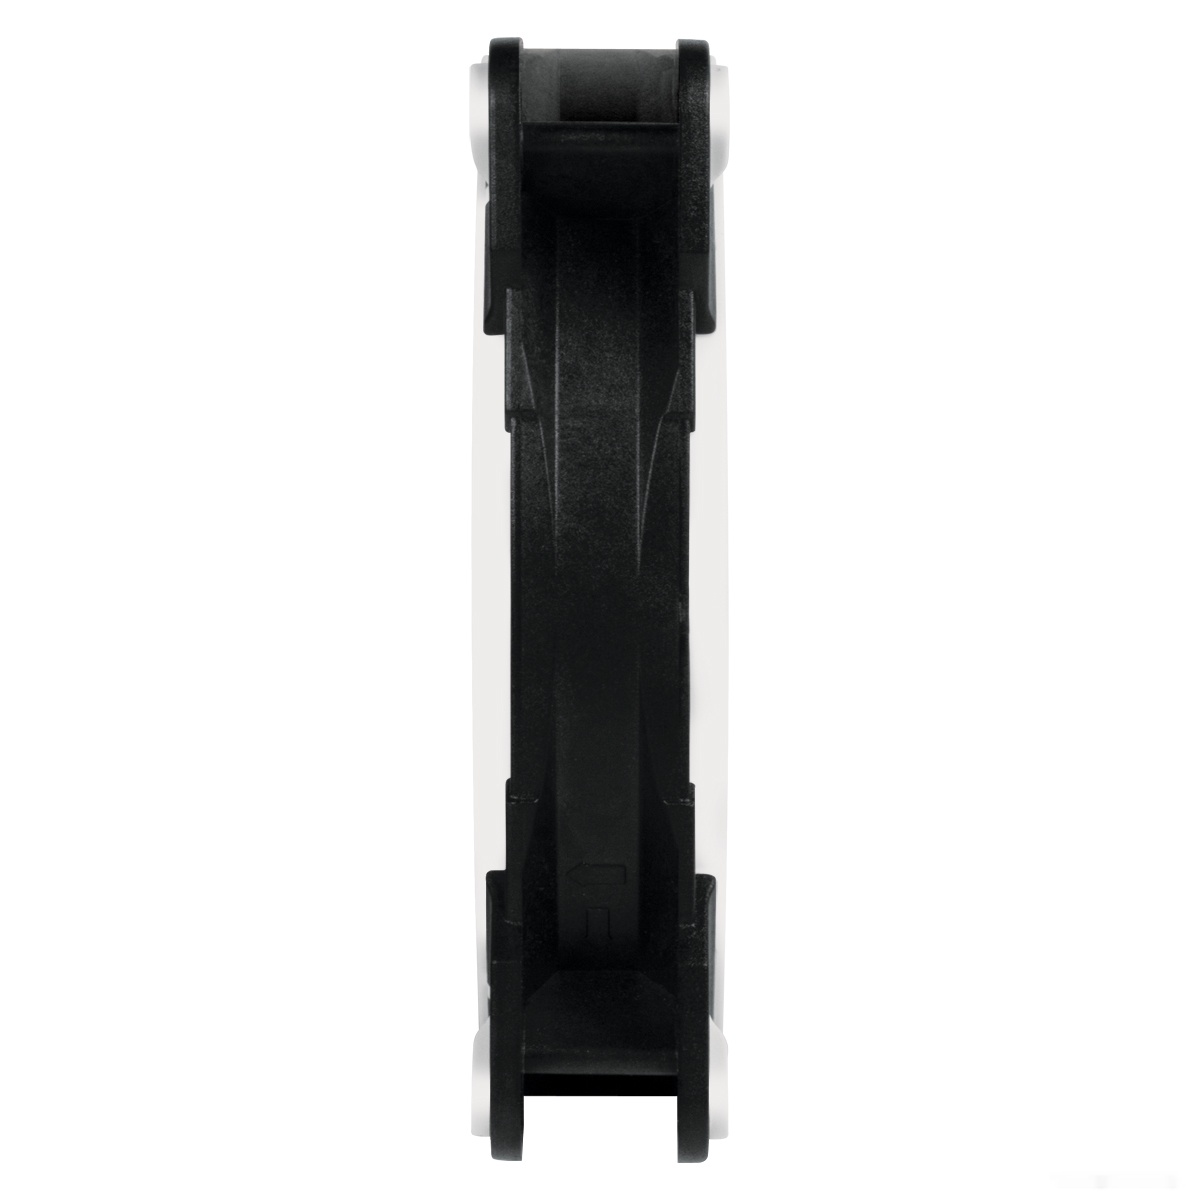 картинка Кулер для корпуса ARCTIC BioniX F120 (Black/White), ACFAN00093A, 12cm, 200-1800rpm, 4Pin, Fluid Dyn. от магазина itmag.kz